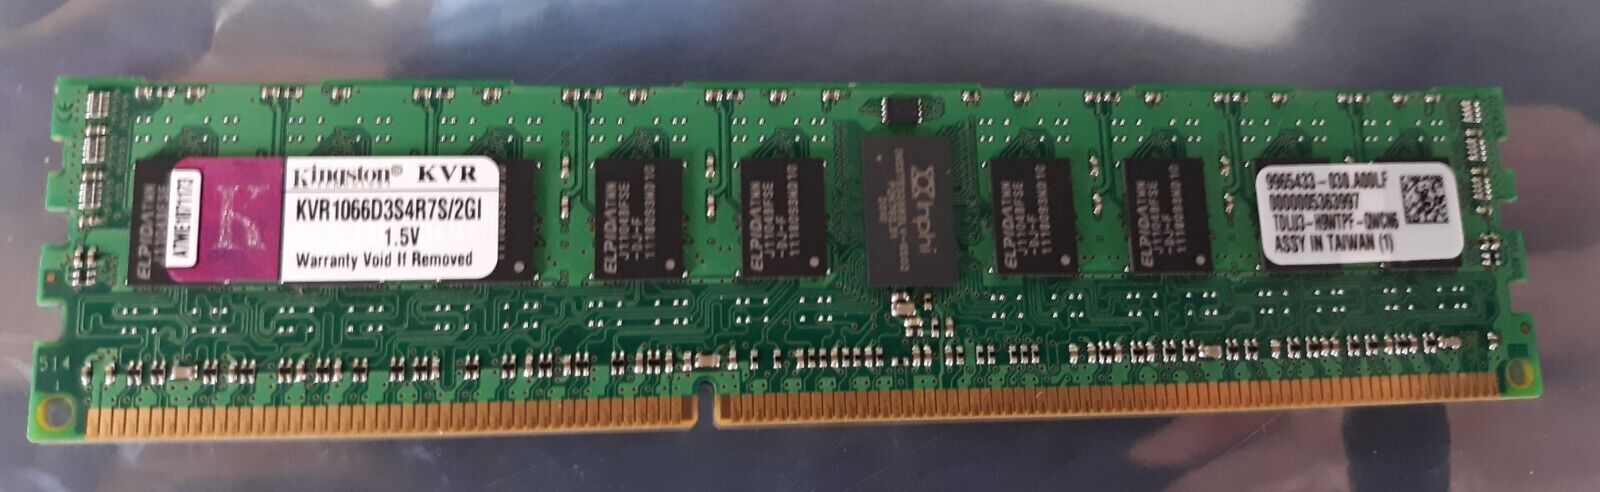 Kingston KVR1066D3S4R7S/2GI 1.5V 2GB DIMM DDR3 Server Memory RAM